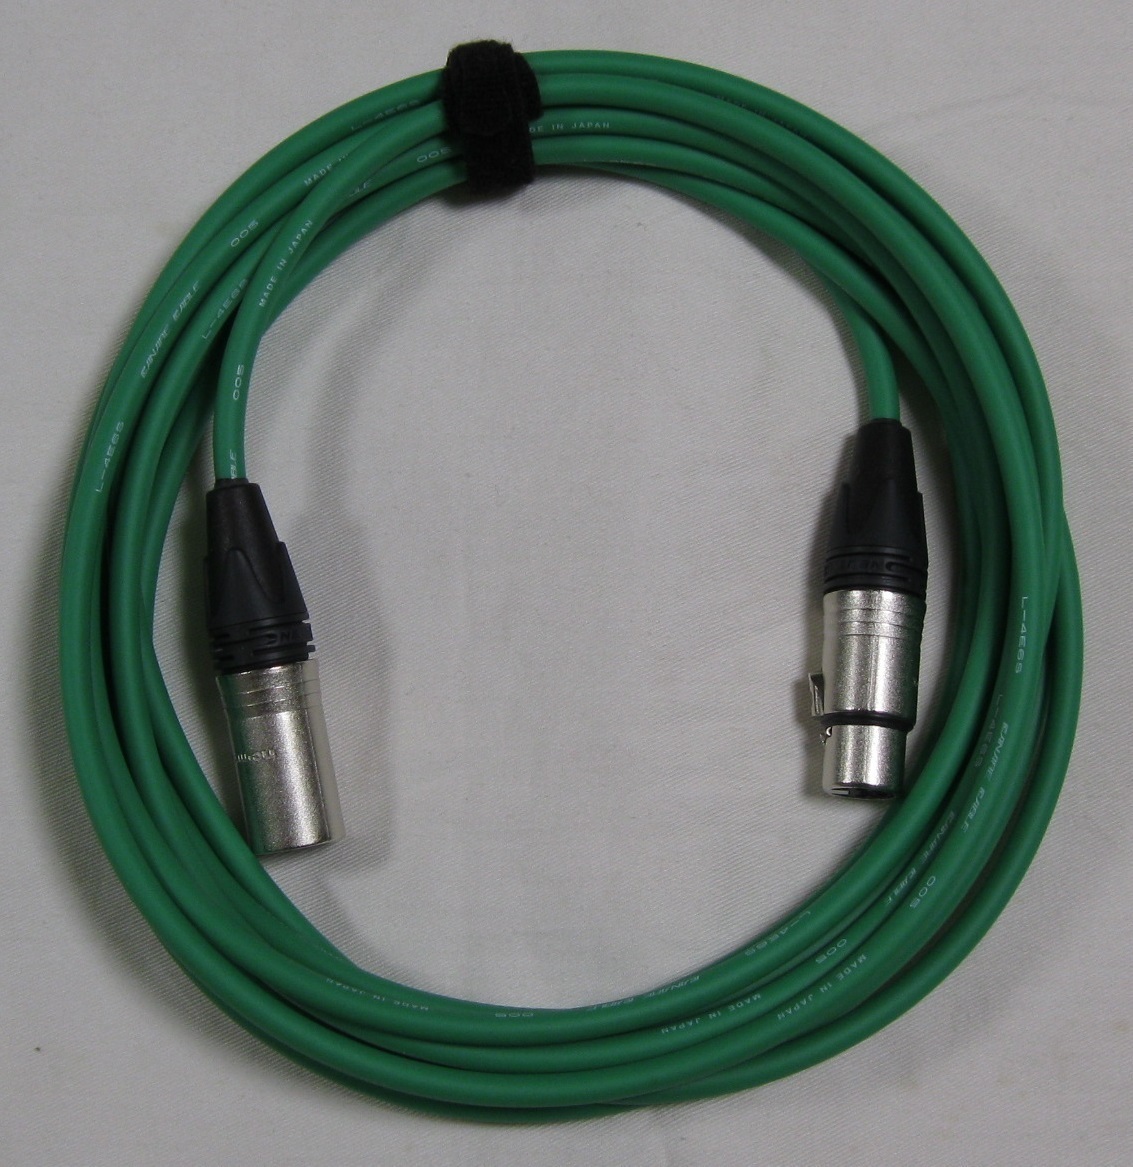  высокое качество цвет микрофонный кабель XLR мужской / женский ( серебряный )5m зеленый FM5G